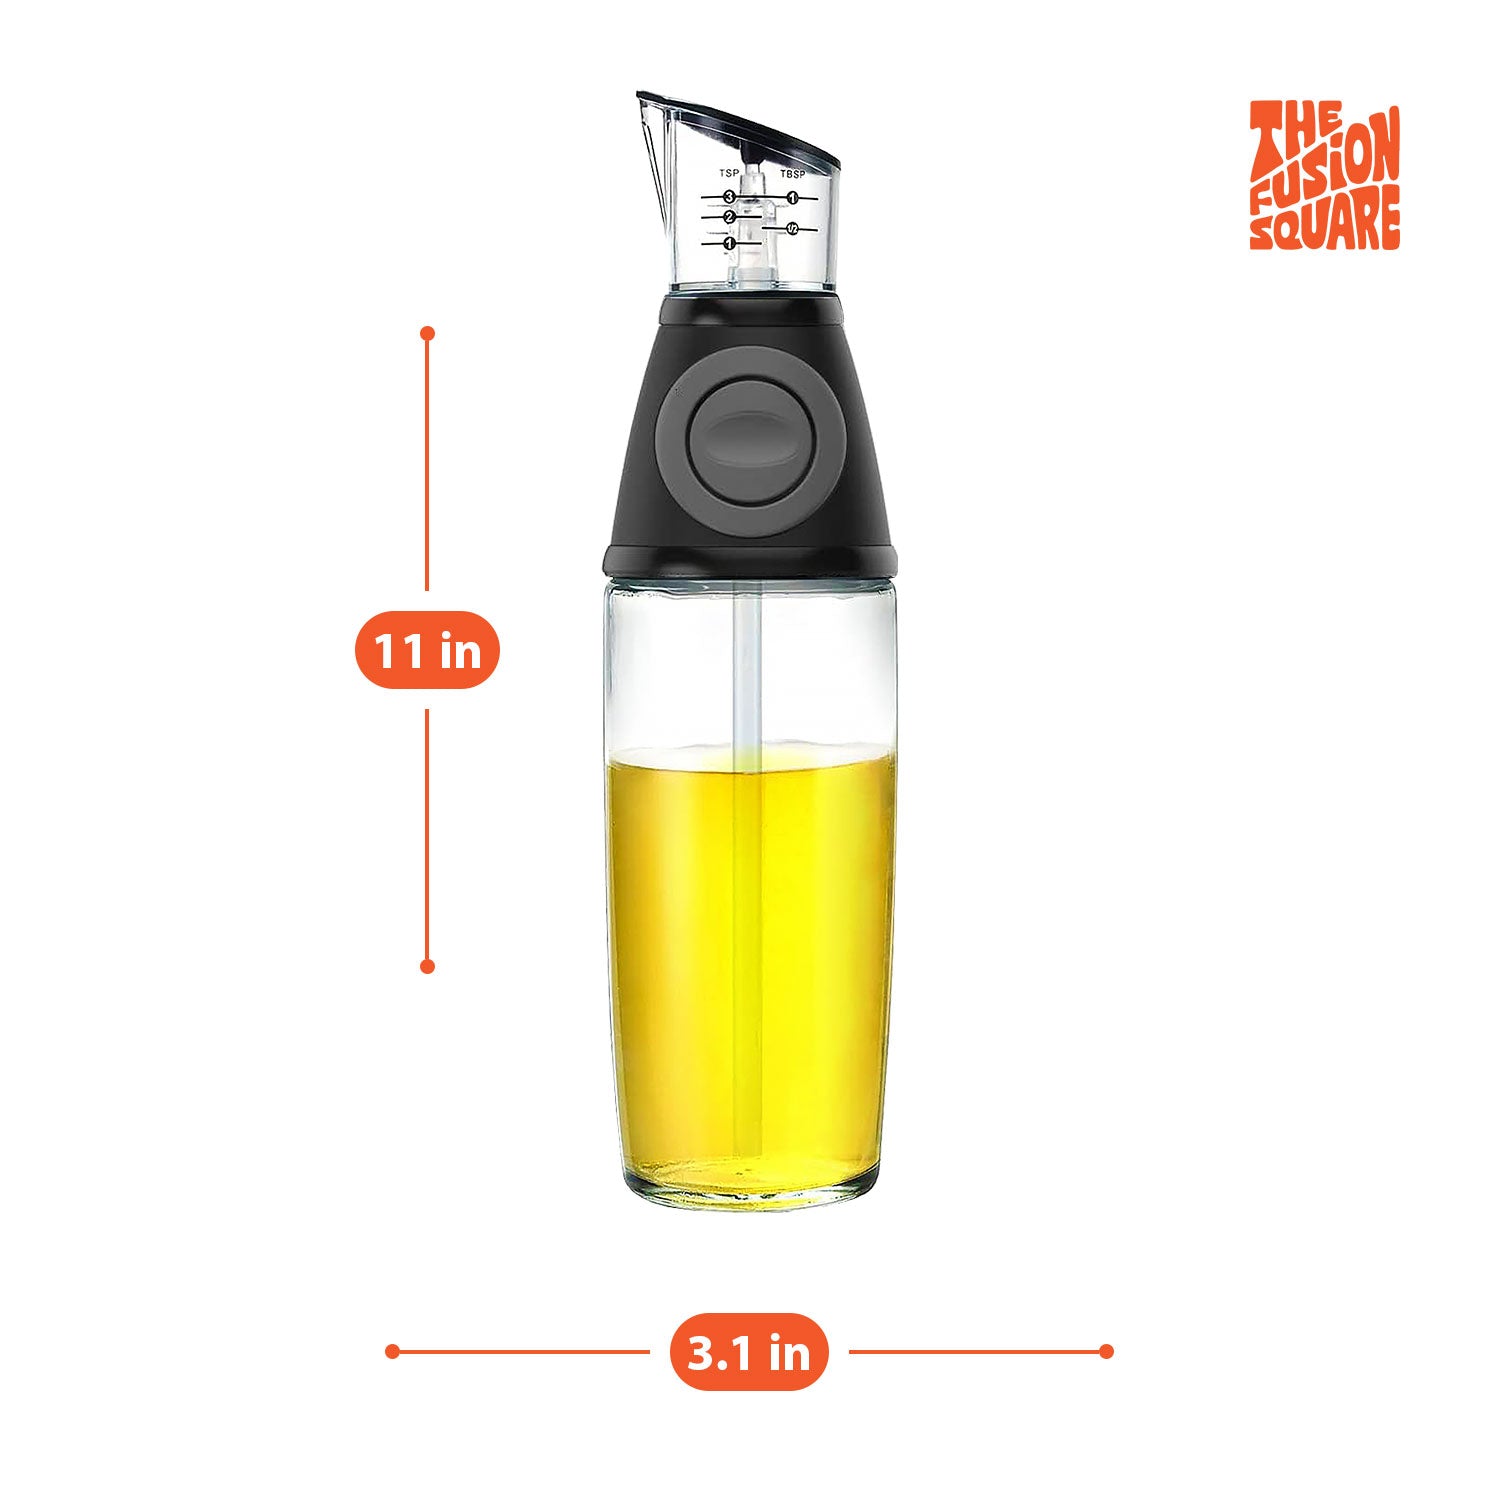 The Fusion Square Oil Dispenser Bottle with Precision Measurement